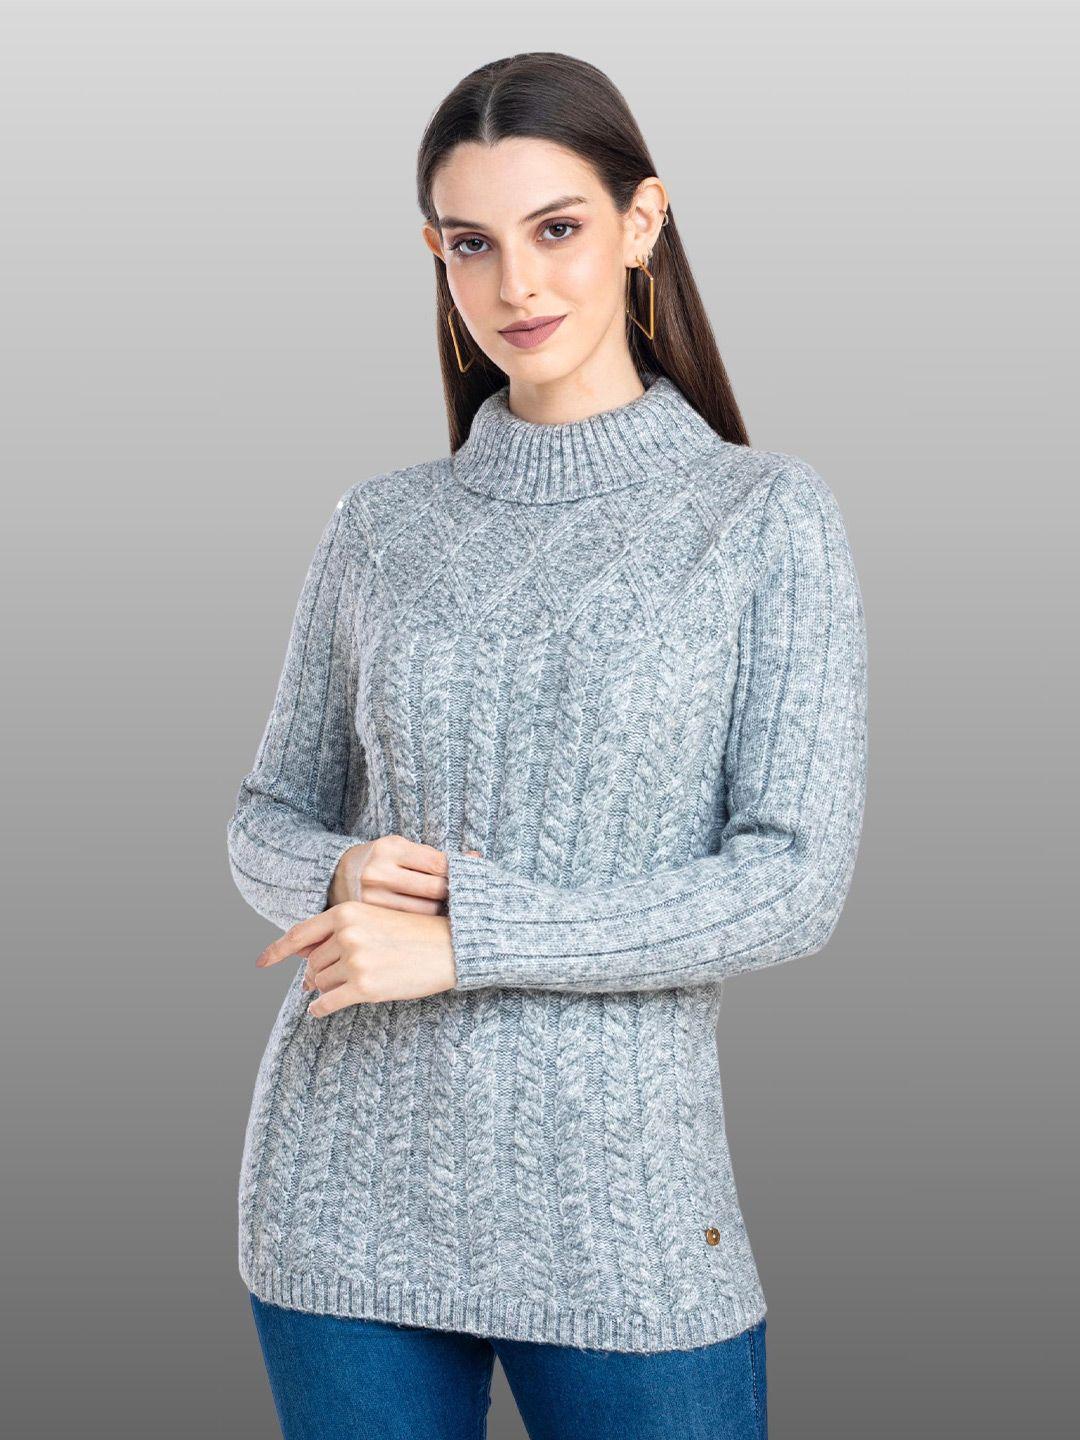 moda-elementi-geometric-self-design-turtle-neck-pullover-sweater